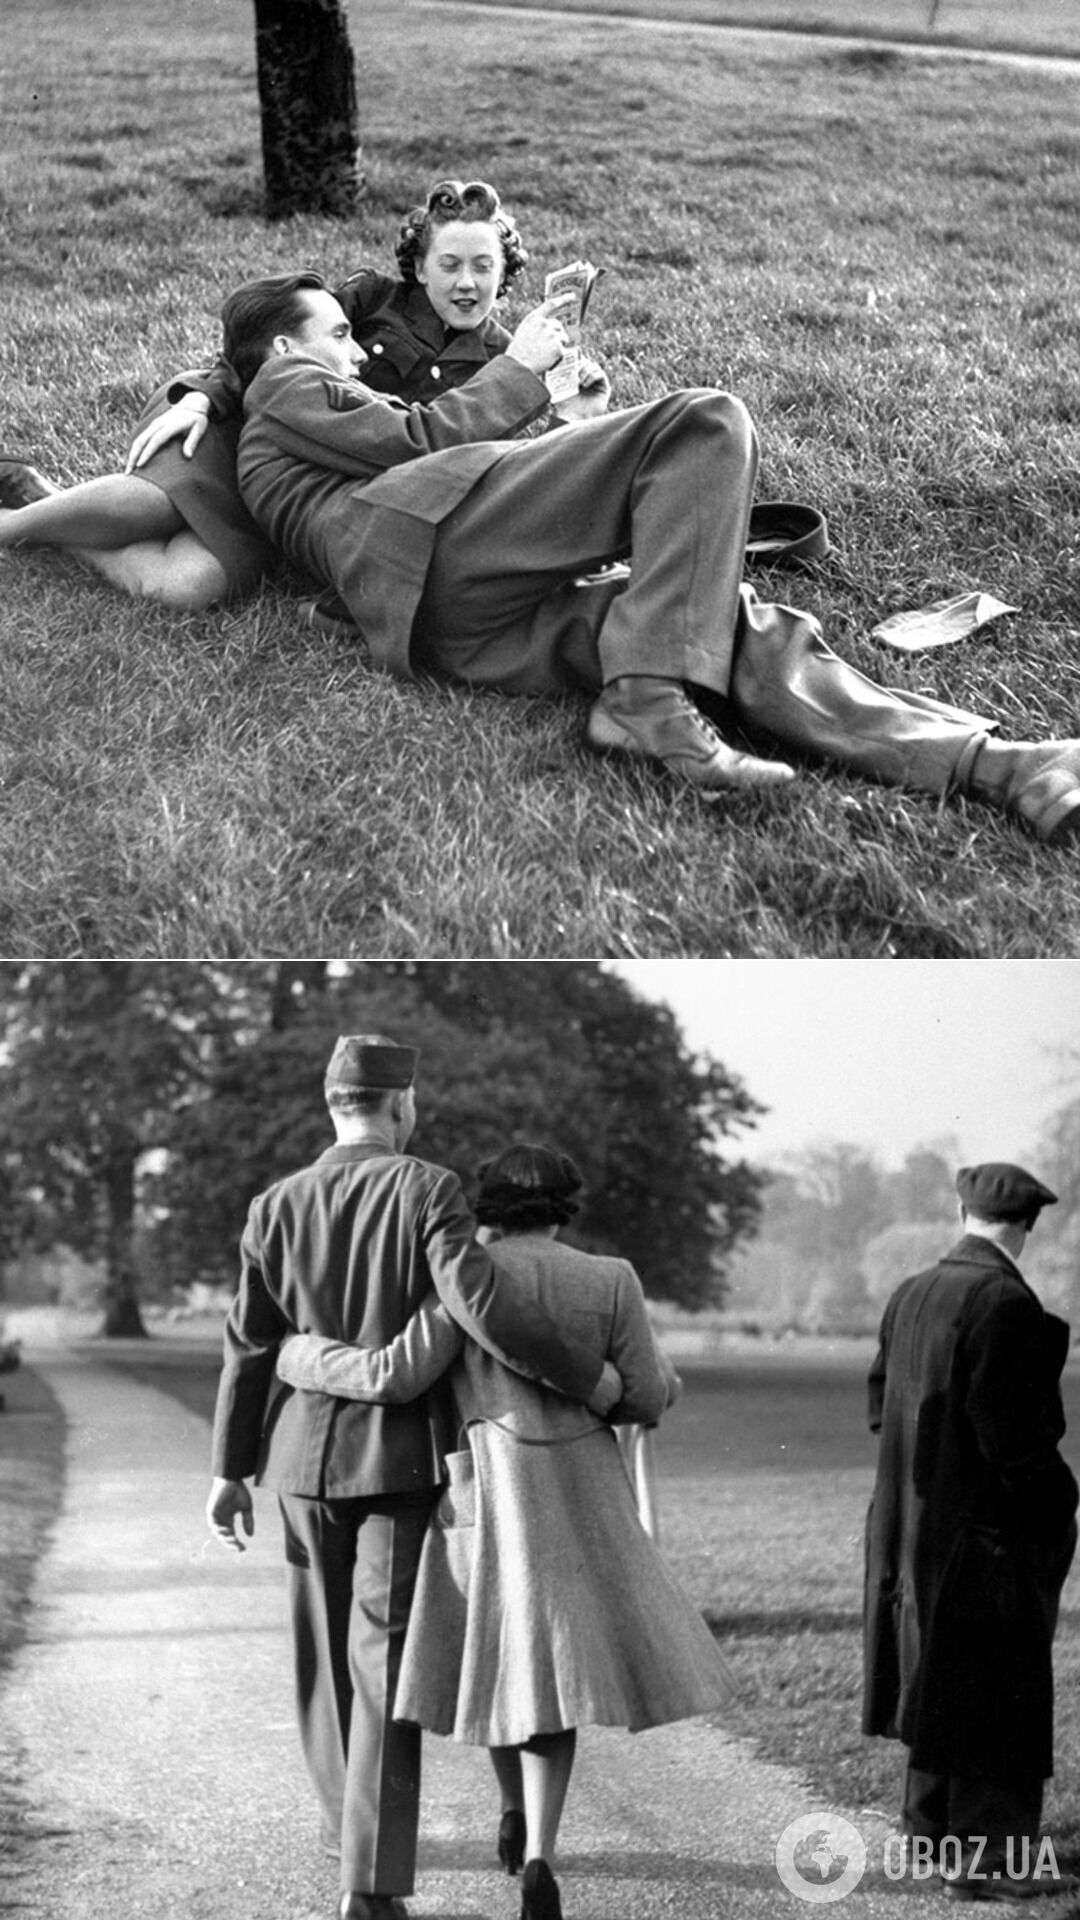 Пара отдыхает в Гайд-парке, 1945 год; прогулка в Гайд-парке, 1945 год